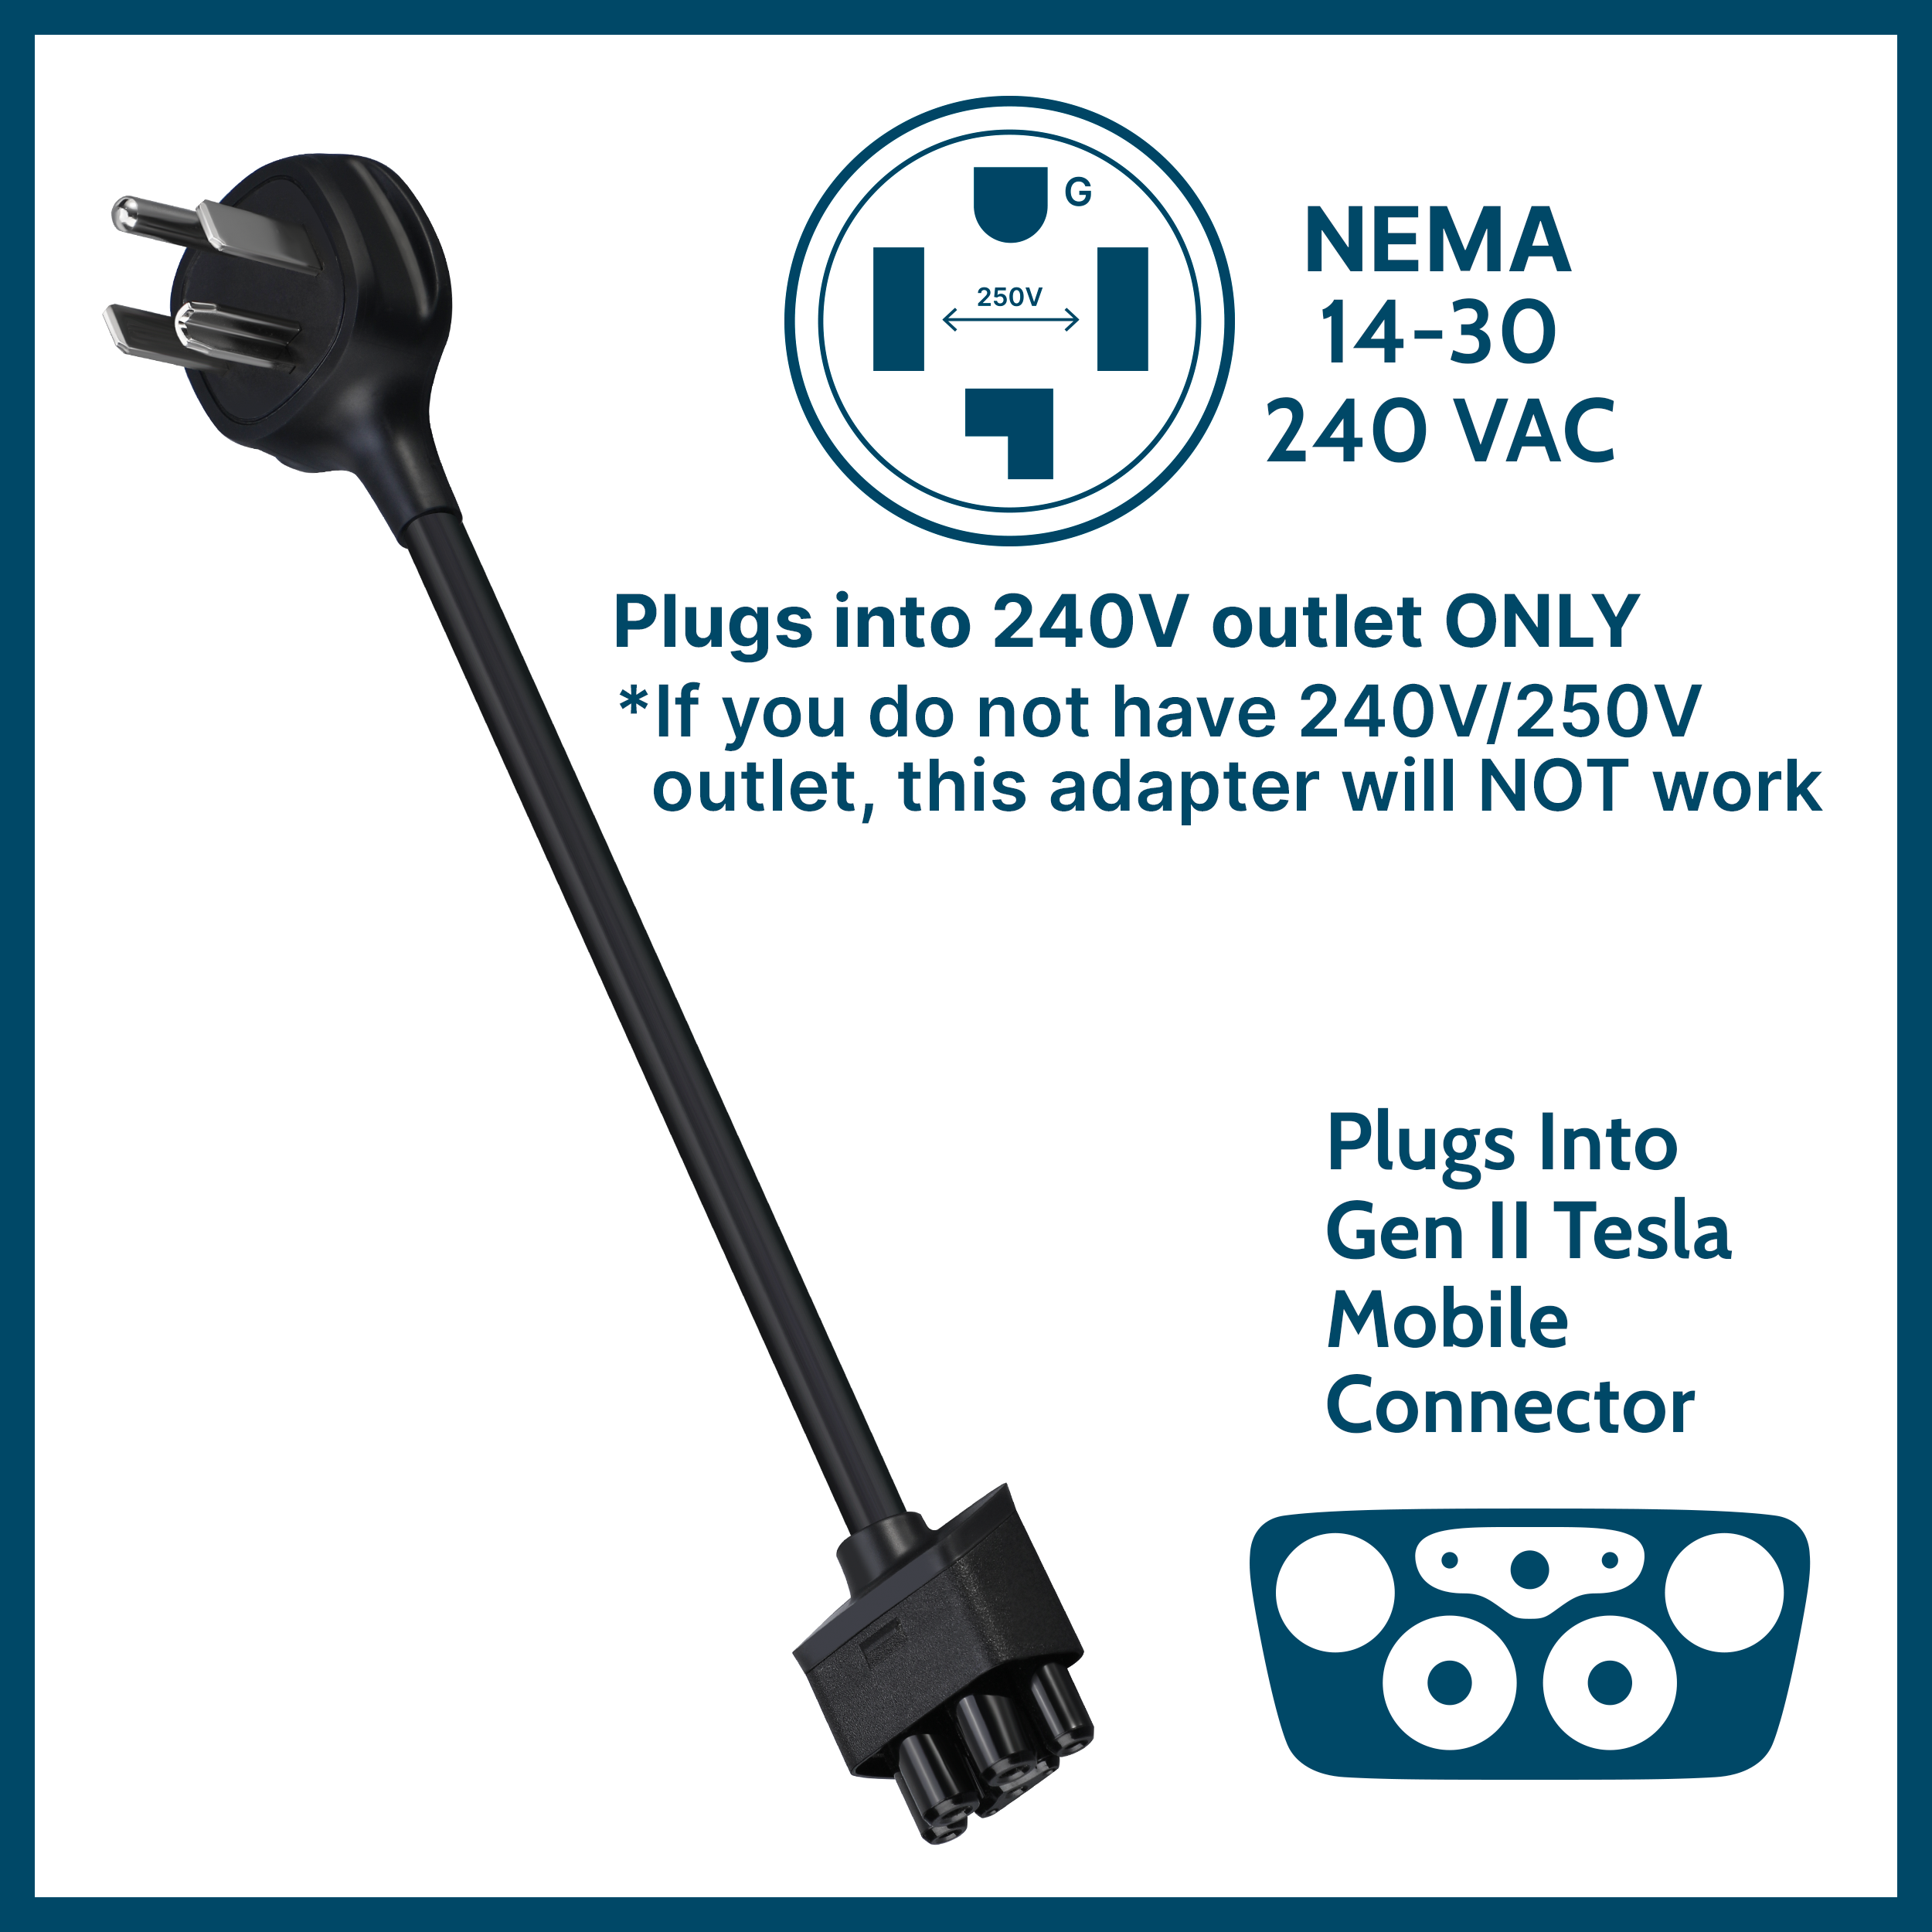 NEMA 14-30 Tesla Mobile Connector Gen 2 Adapter